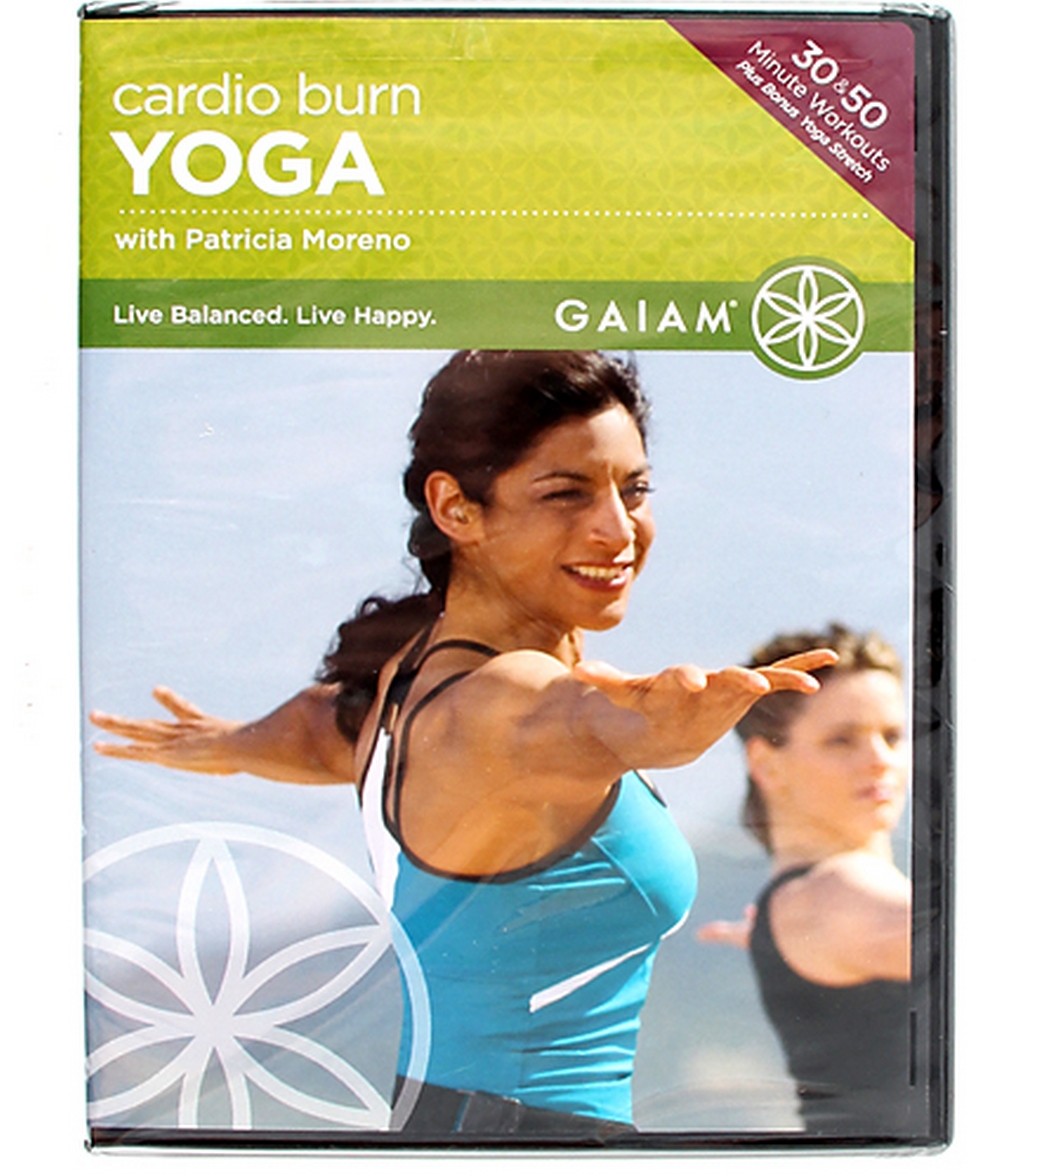 gaiam yoga dvd